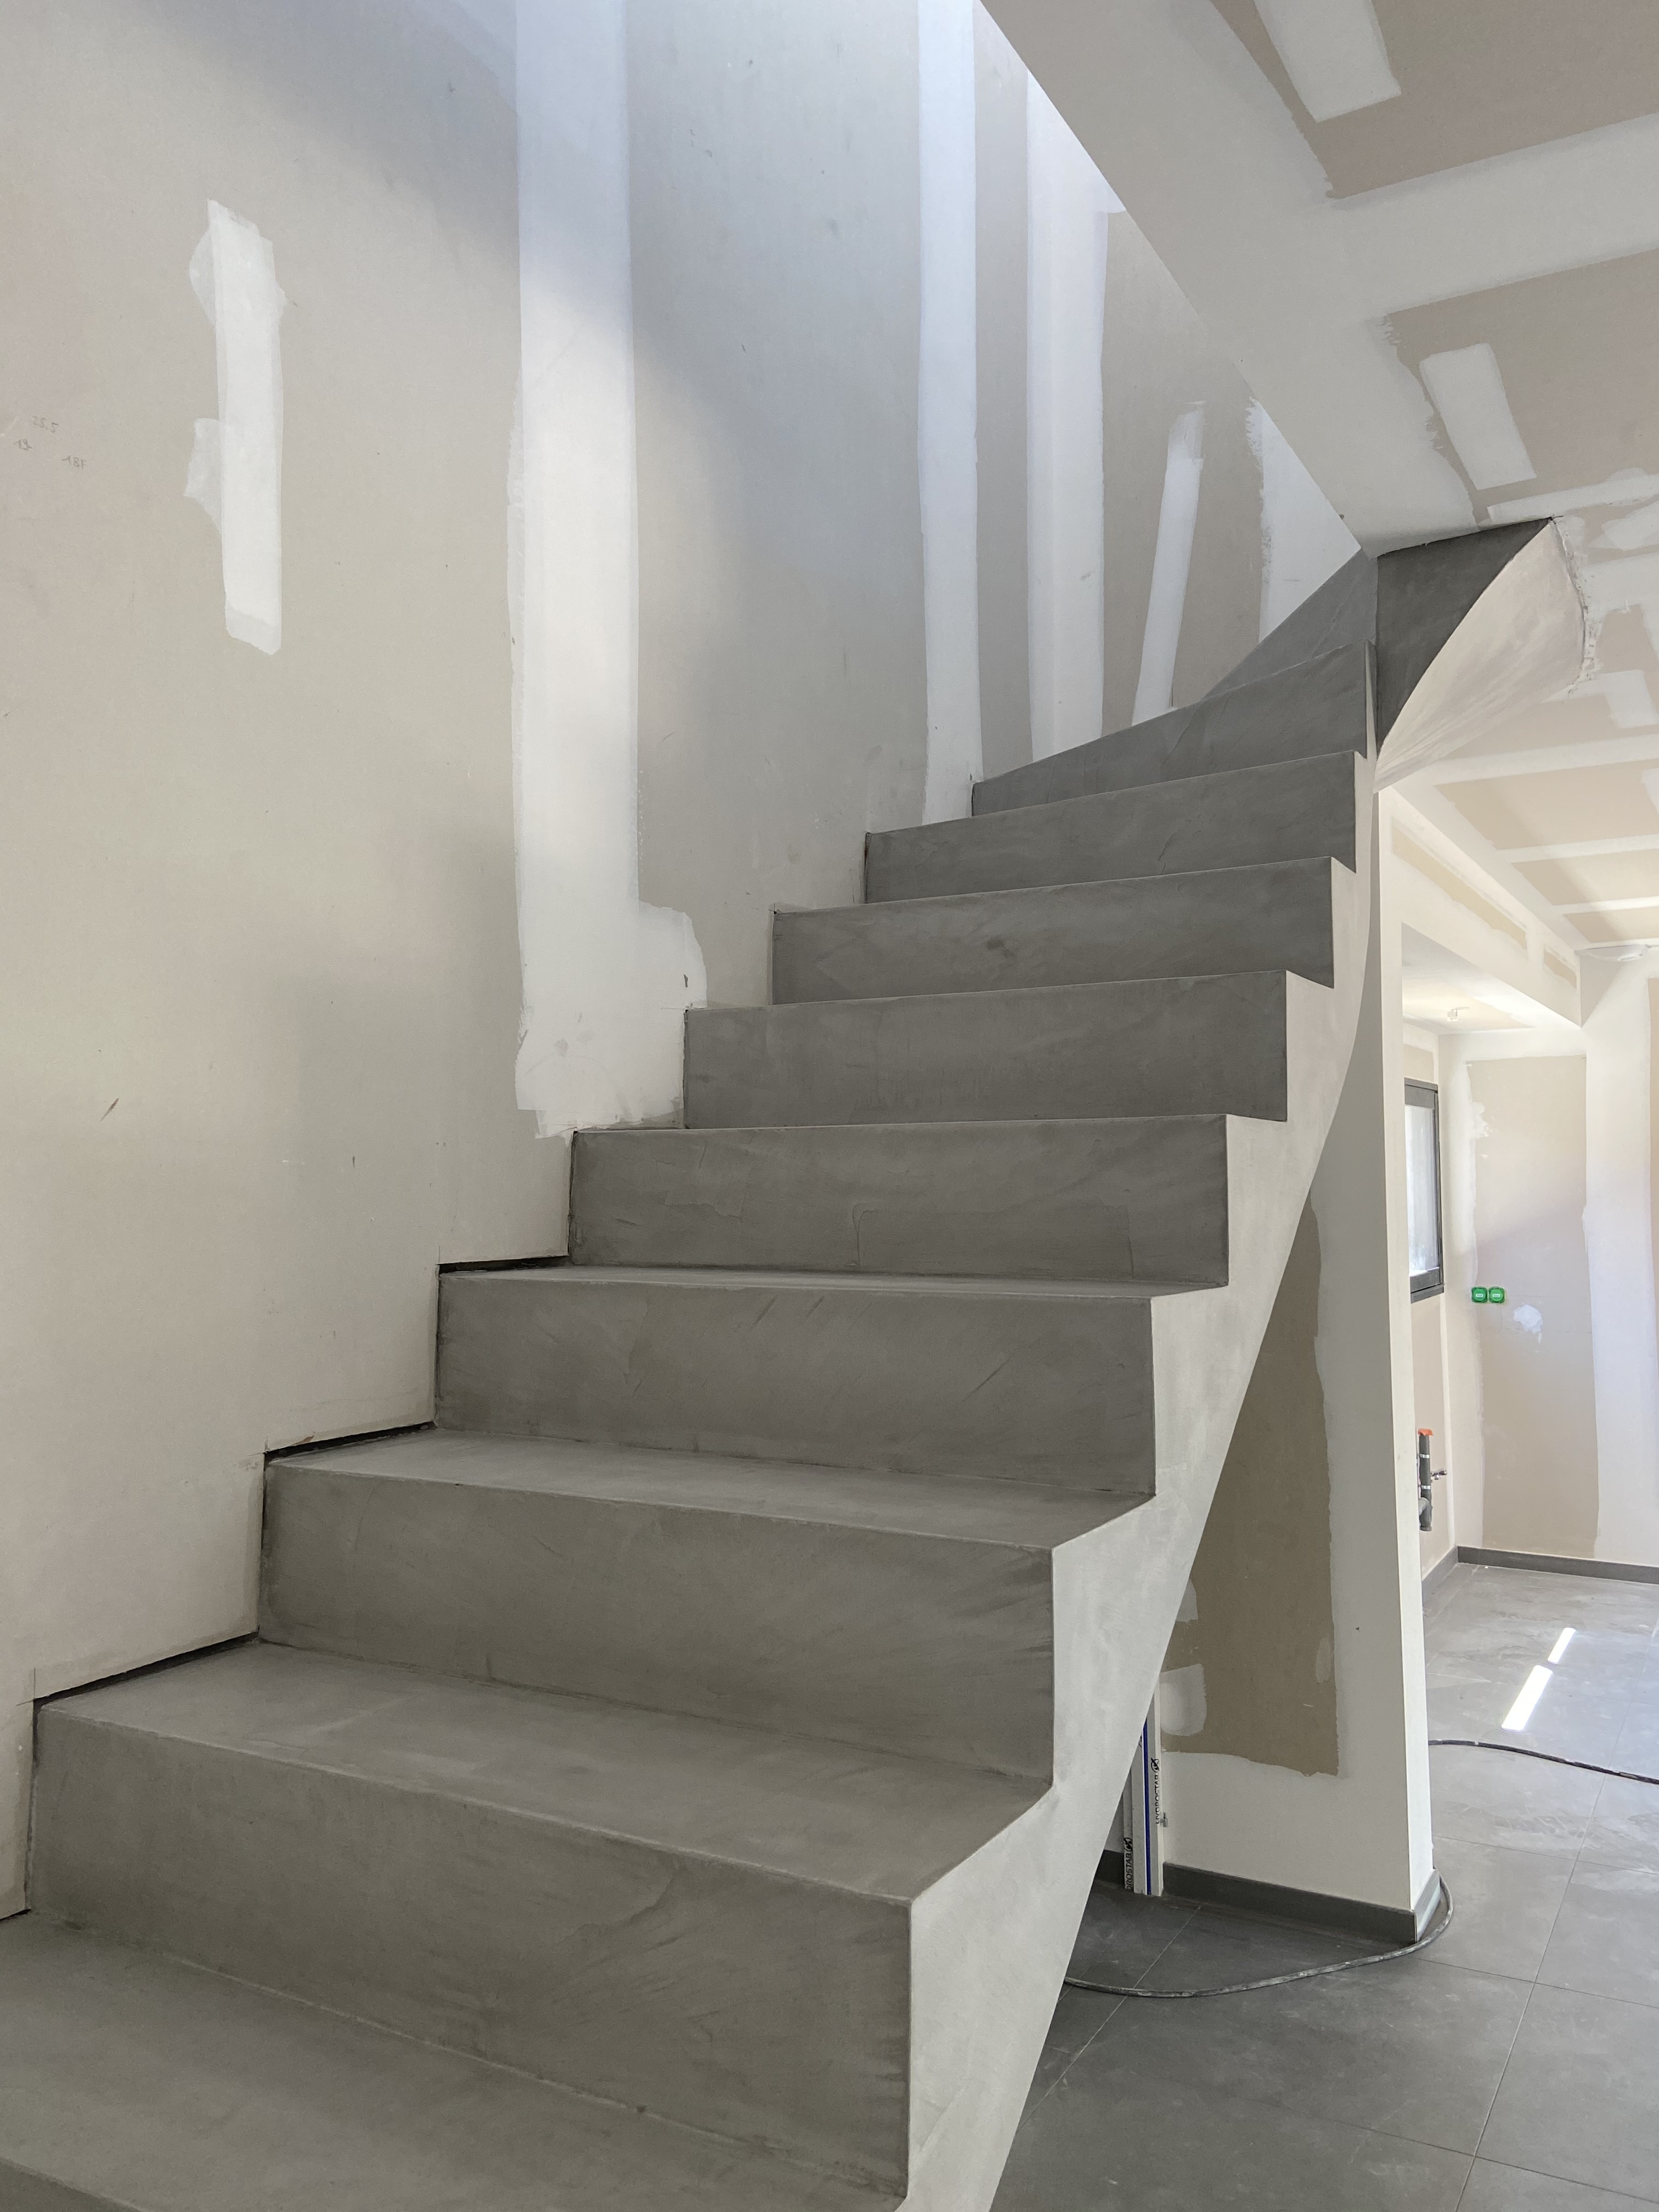 Escalier à paillasse en béton ciré, d'une maison individuelle entre Eperlecques et Arques. Matériau dur à l'usure, résistant aux rayures et autres chocs.